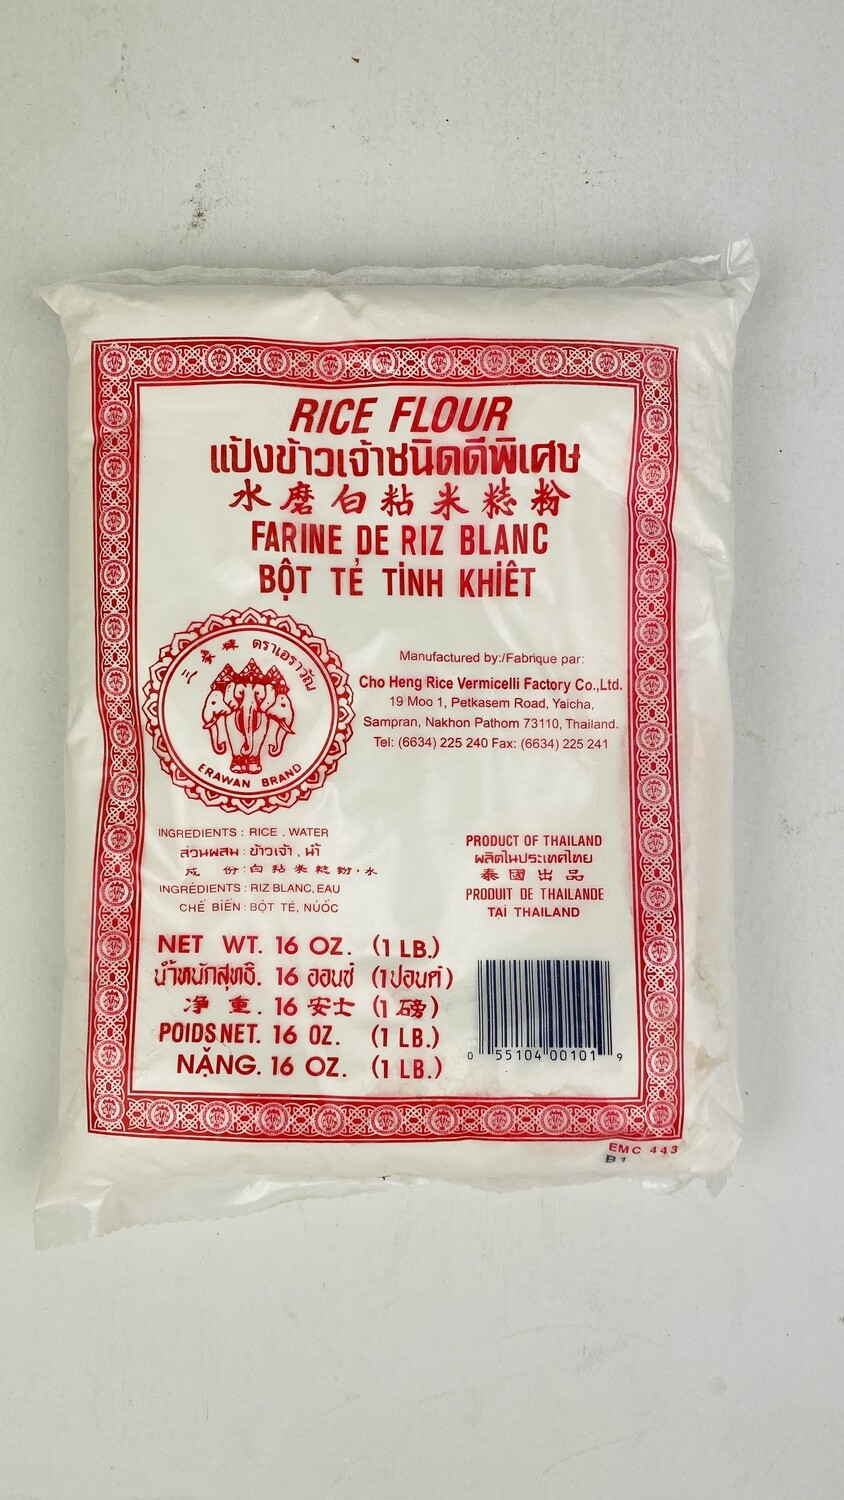 (2包) Rice Flour 1lb 三象牌水磨粘米粉 本周特价